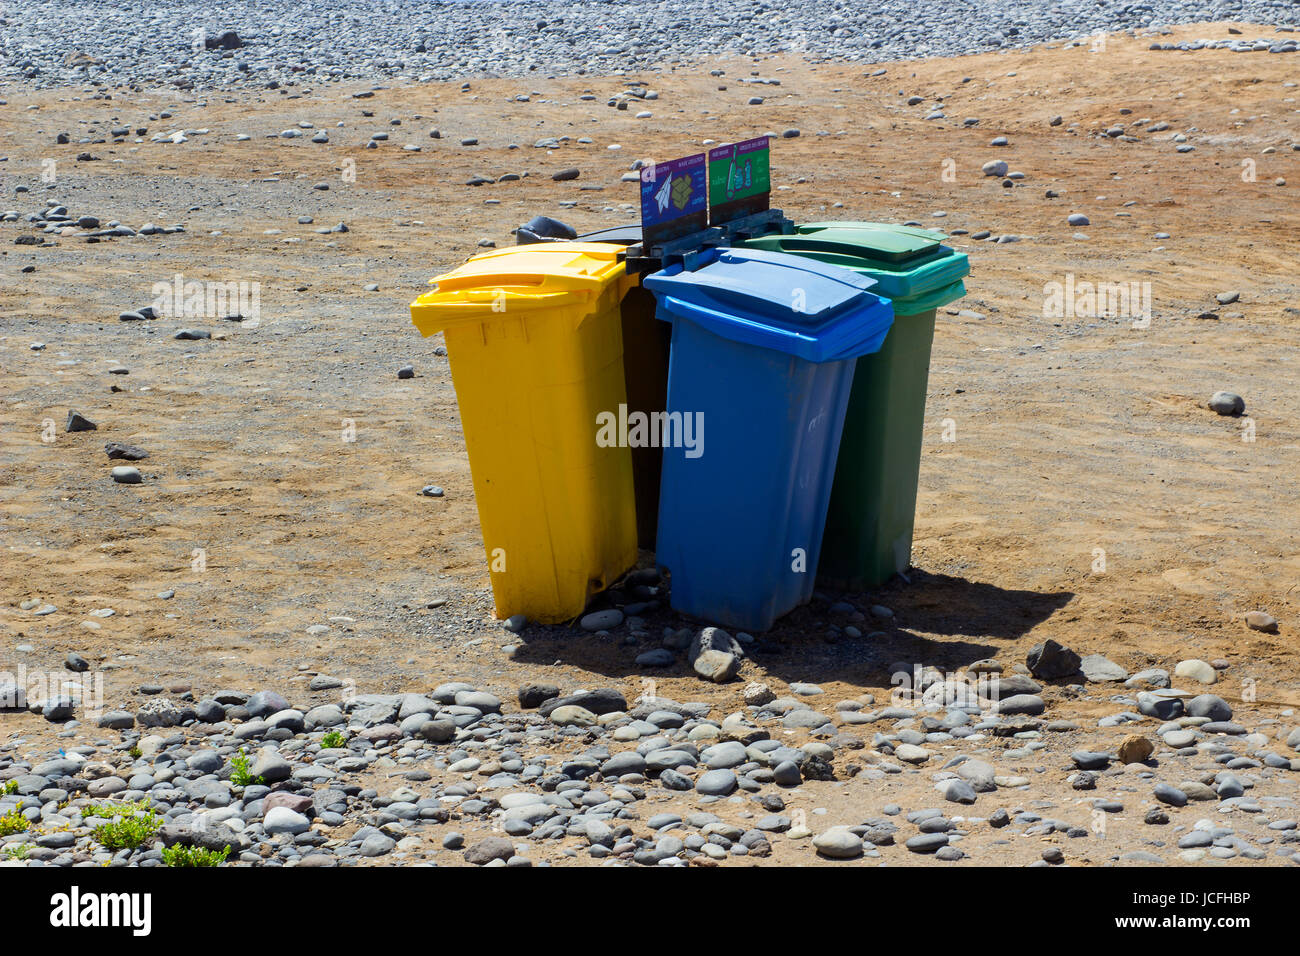 Con codice colore impennata cassonetti per il riciclaggio su una spiaggia di Playa Las Americas in Teneriffe Foto Stock